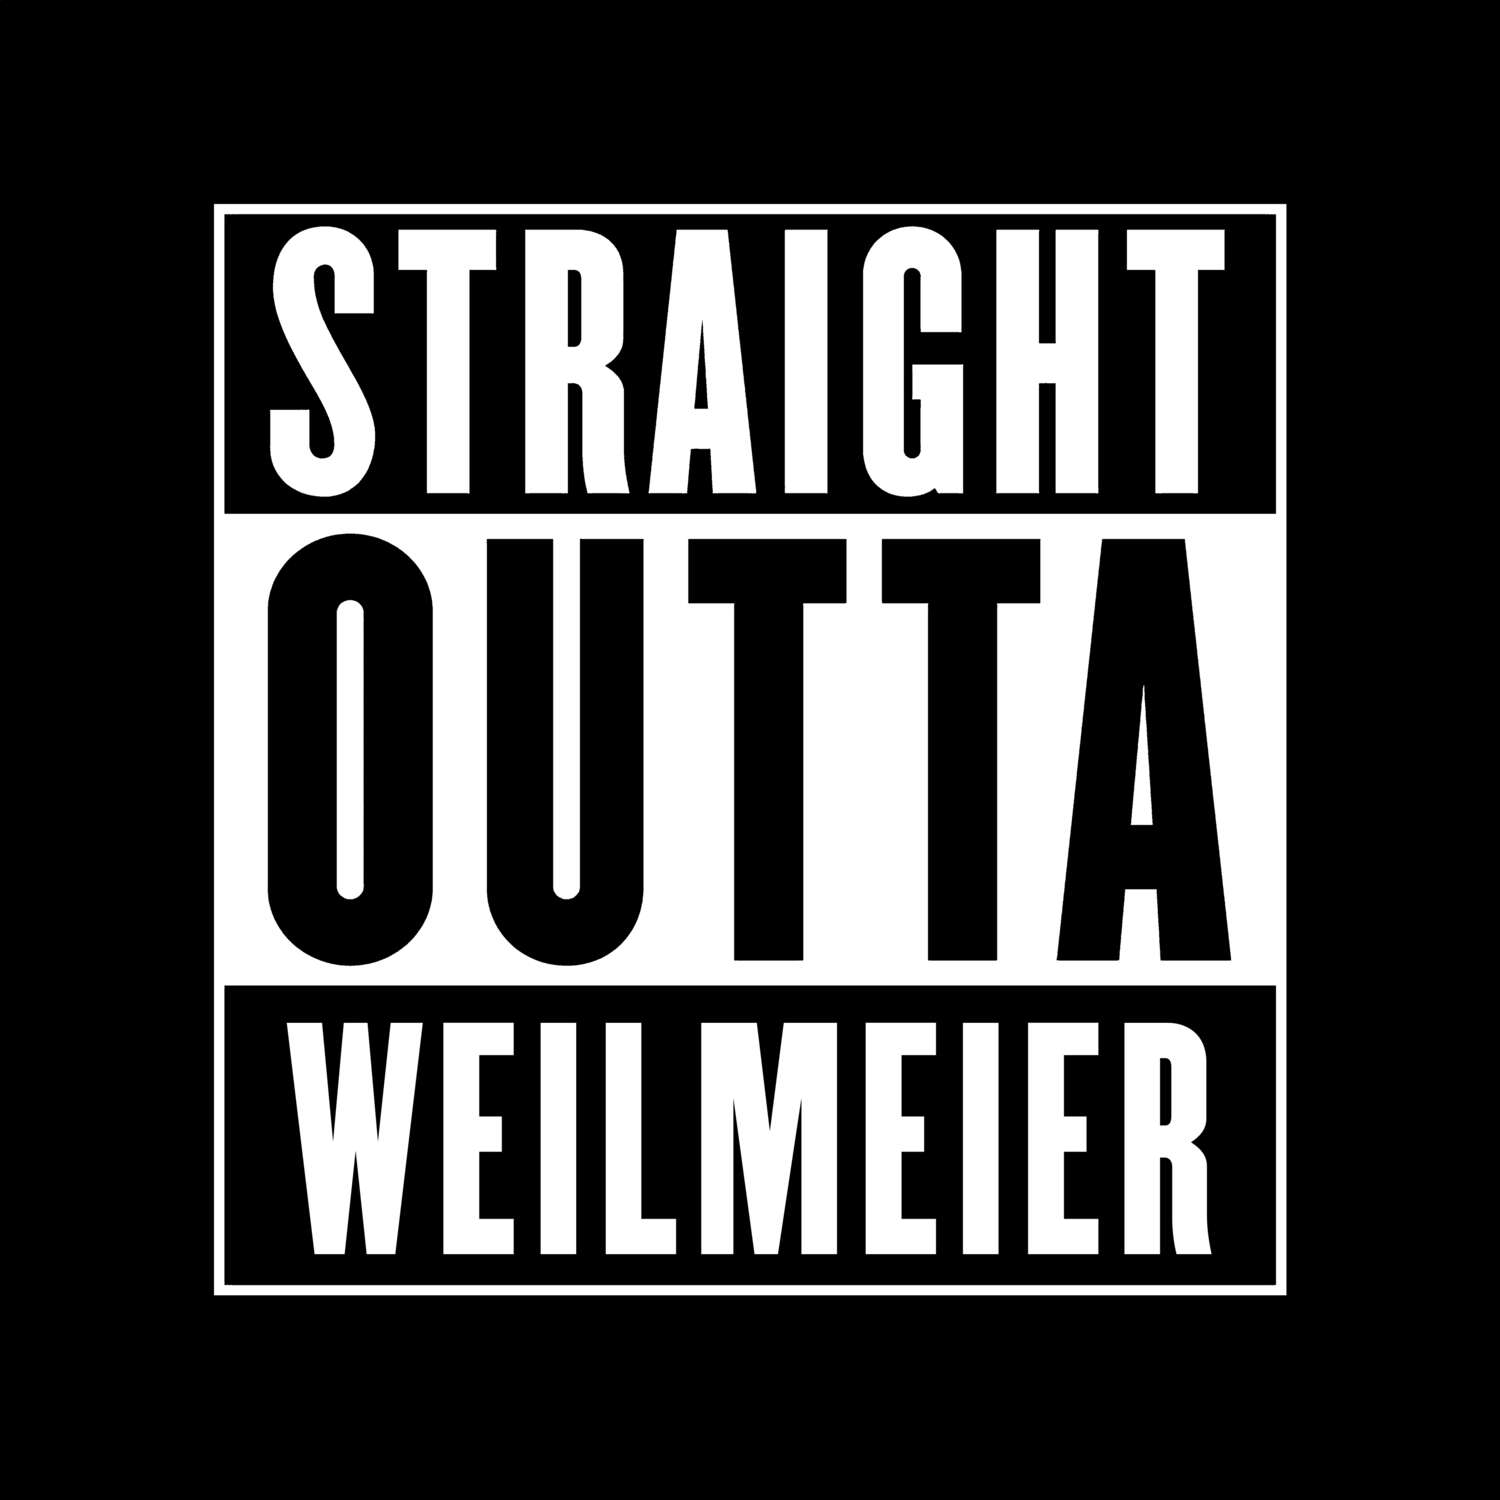 Weilmeier T-Shirt »Straight Outta«